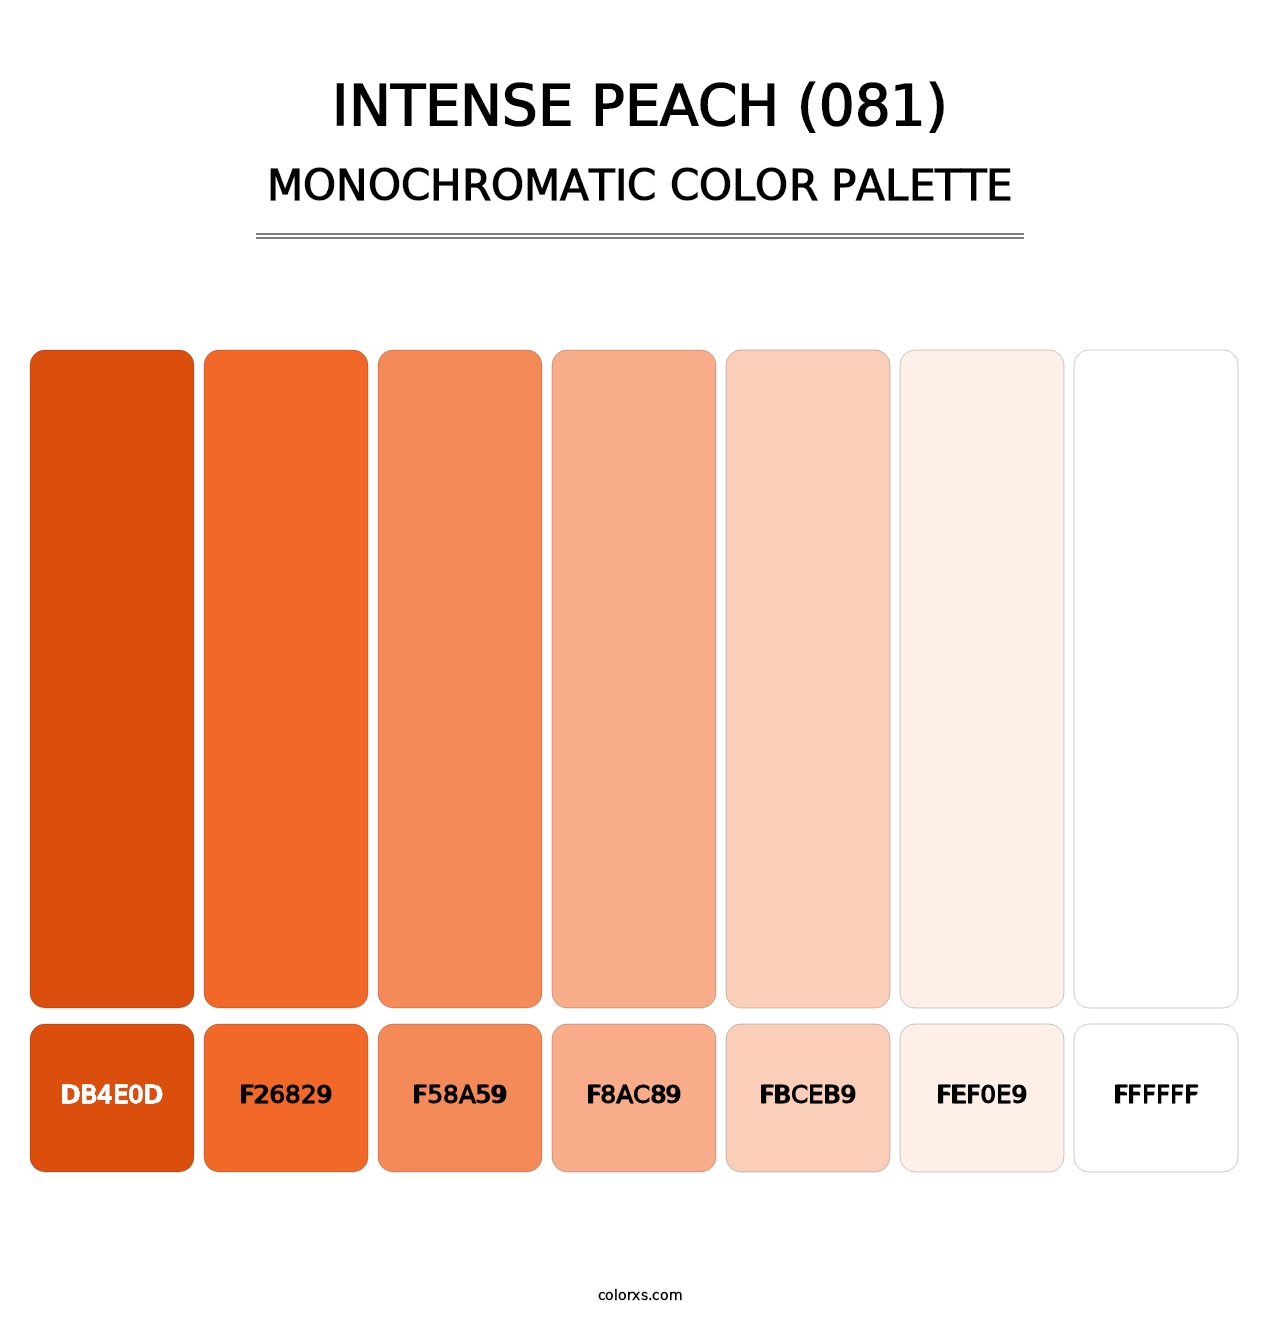 Intense Peach (081) - Monochromatic Color Palette